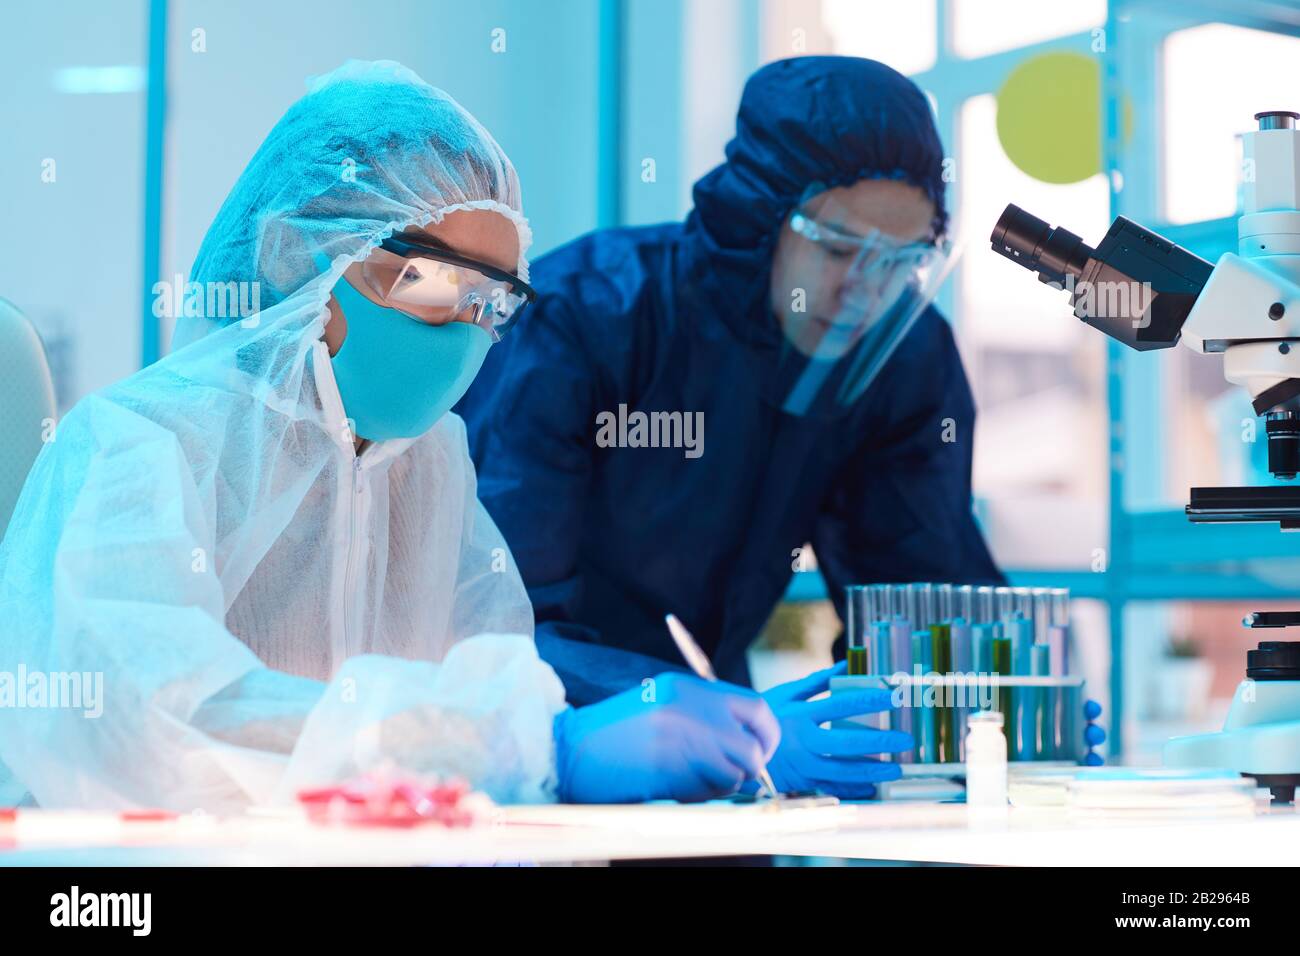 Ritratto della vista laterale di due scienziati che indossano attrezzature a rischio biologico lavorando alla ricerca in laboratorio medico, copia spazio Foto Stock